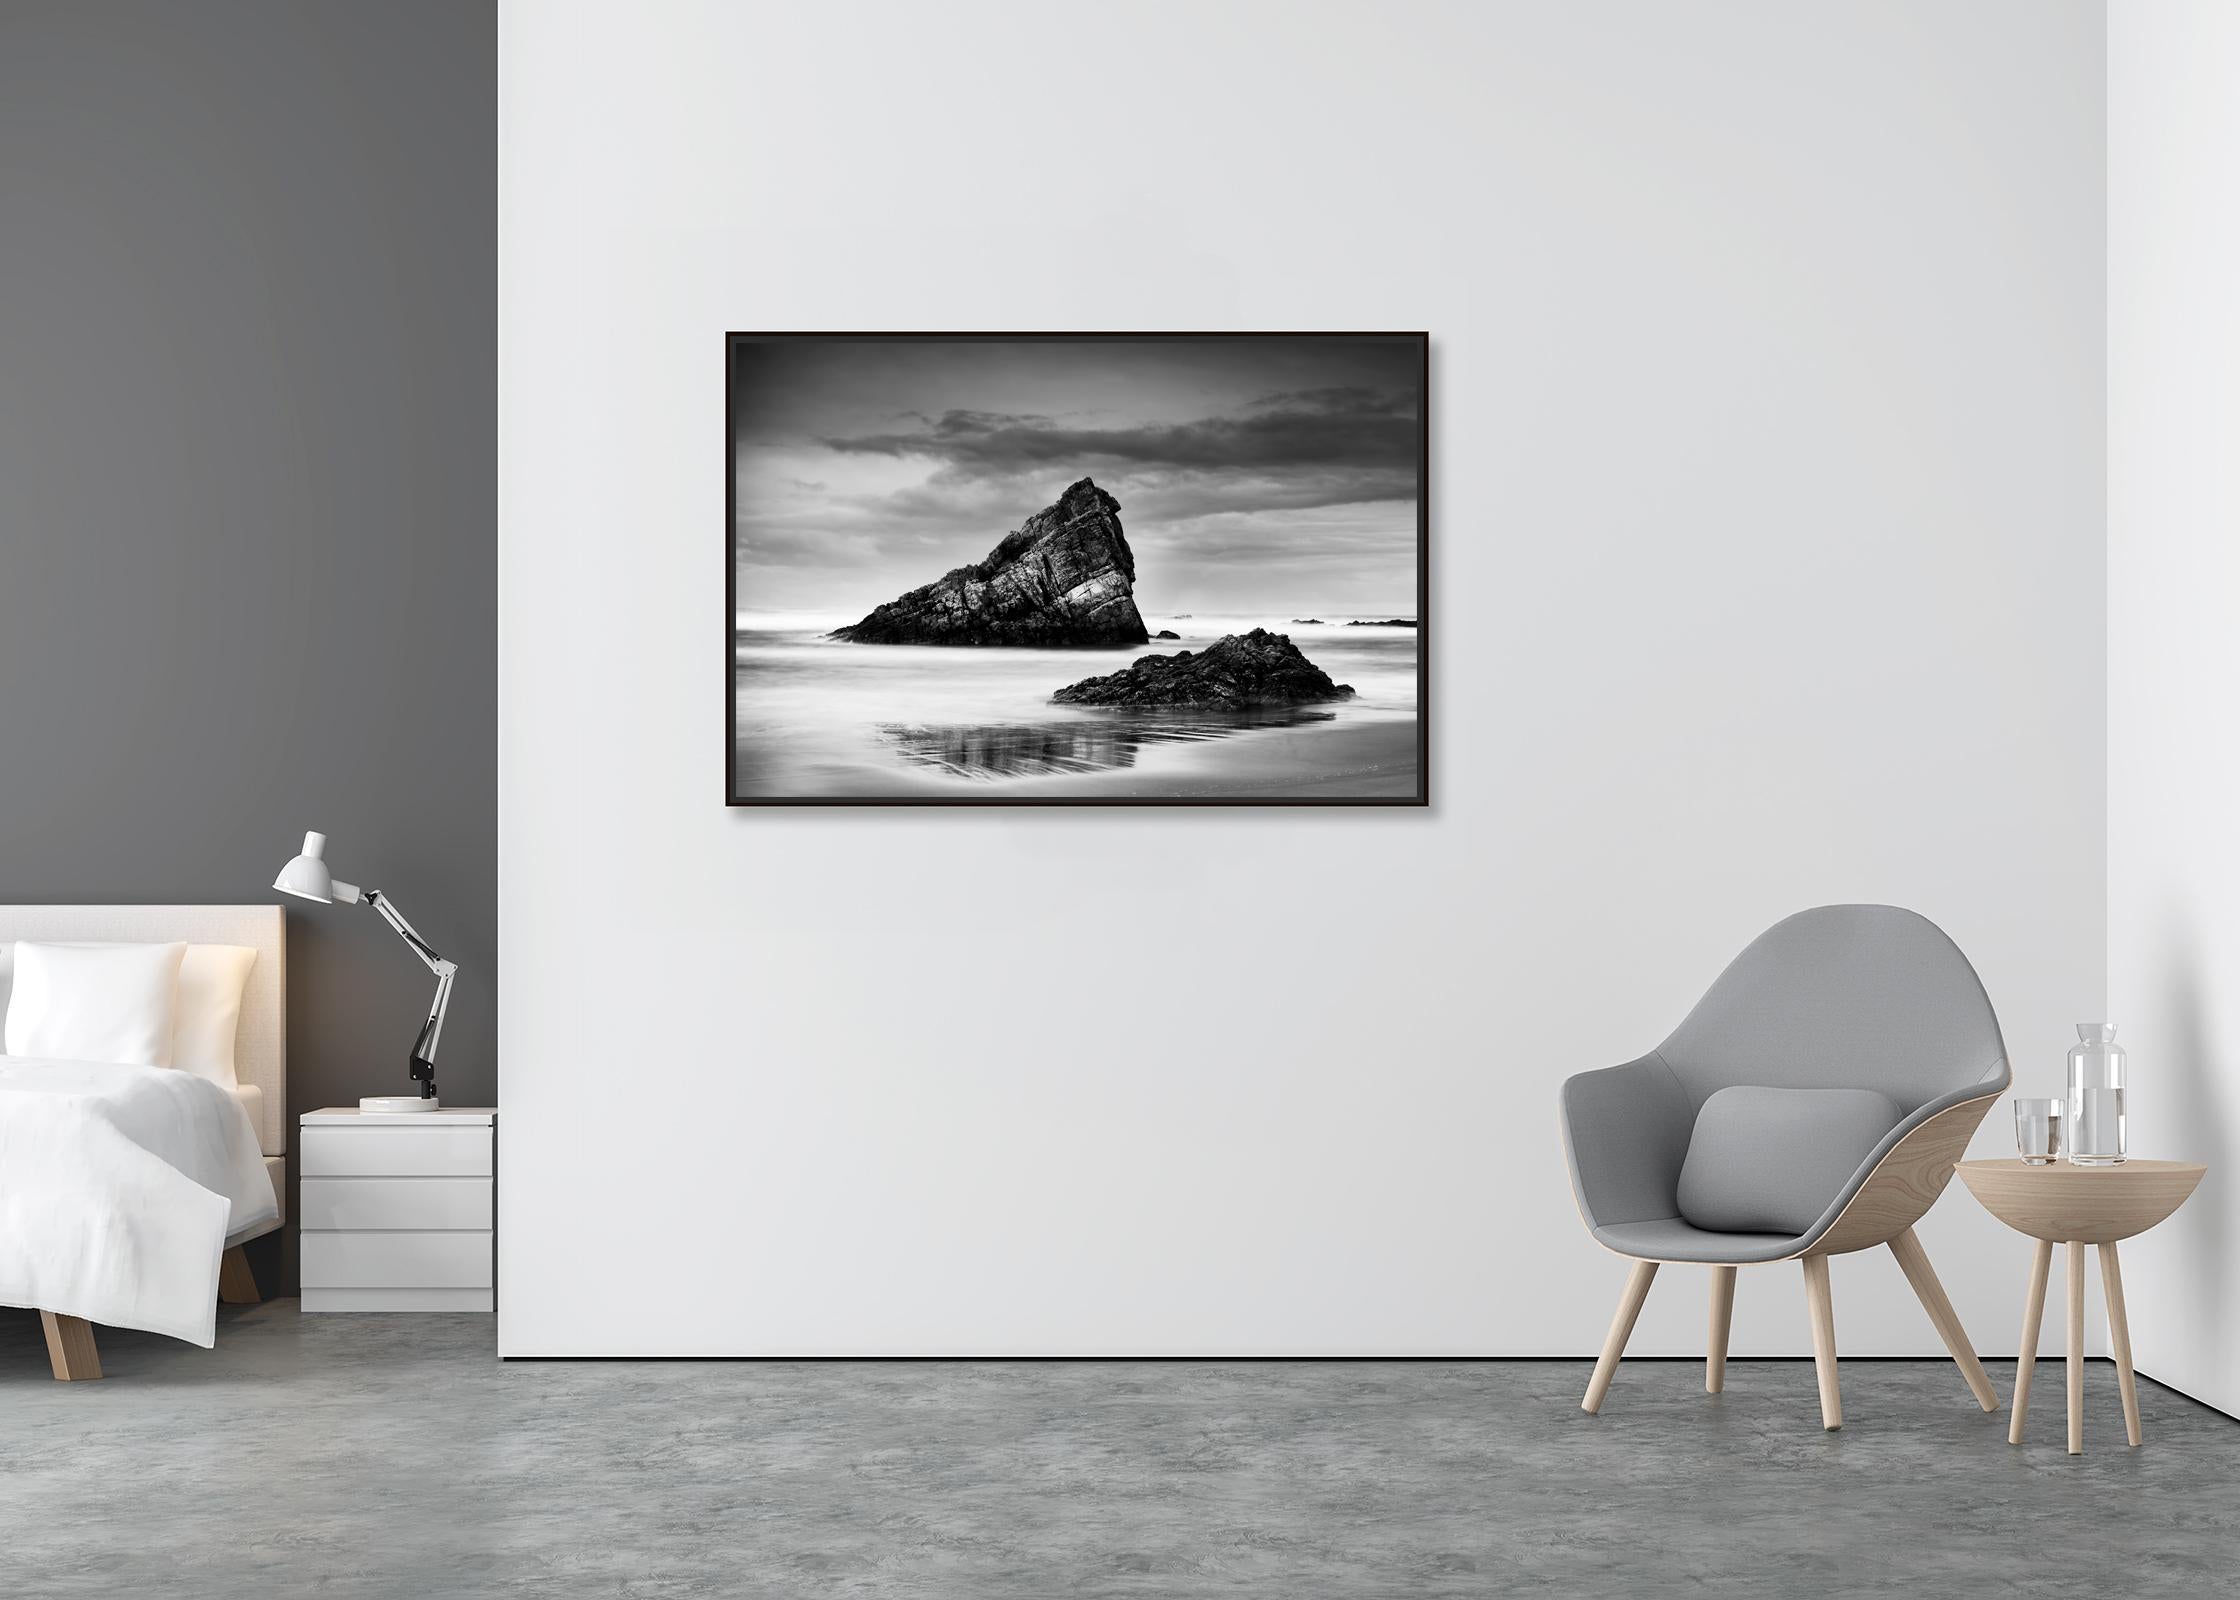 Bay of Biscay, Küste, Strand, Spanien, Schwarz-Weiß-Landschaftsfotografie (Zeitgenössisch), Photograph, von Gerald Berghammer